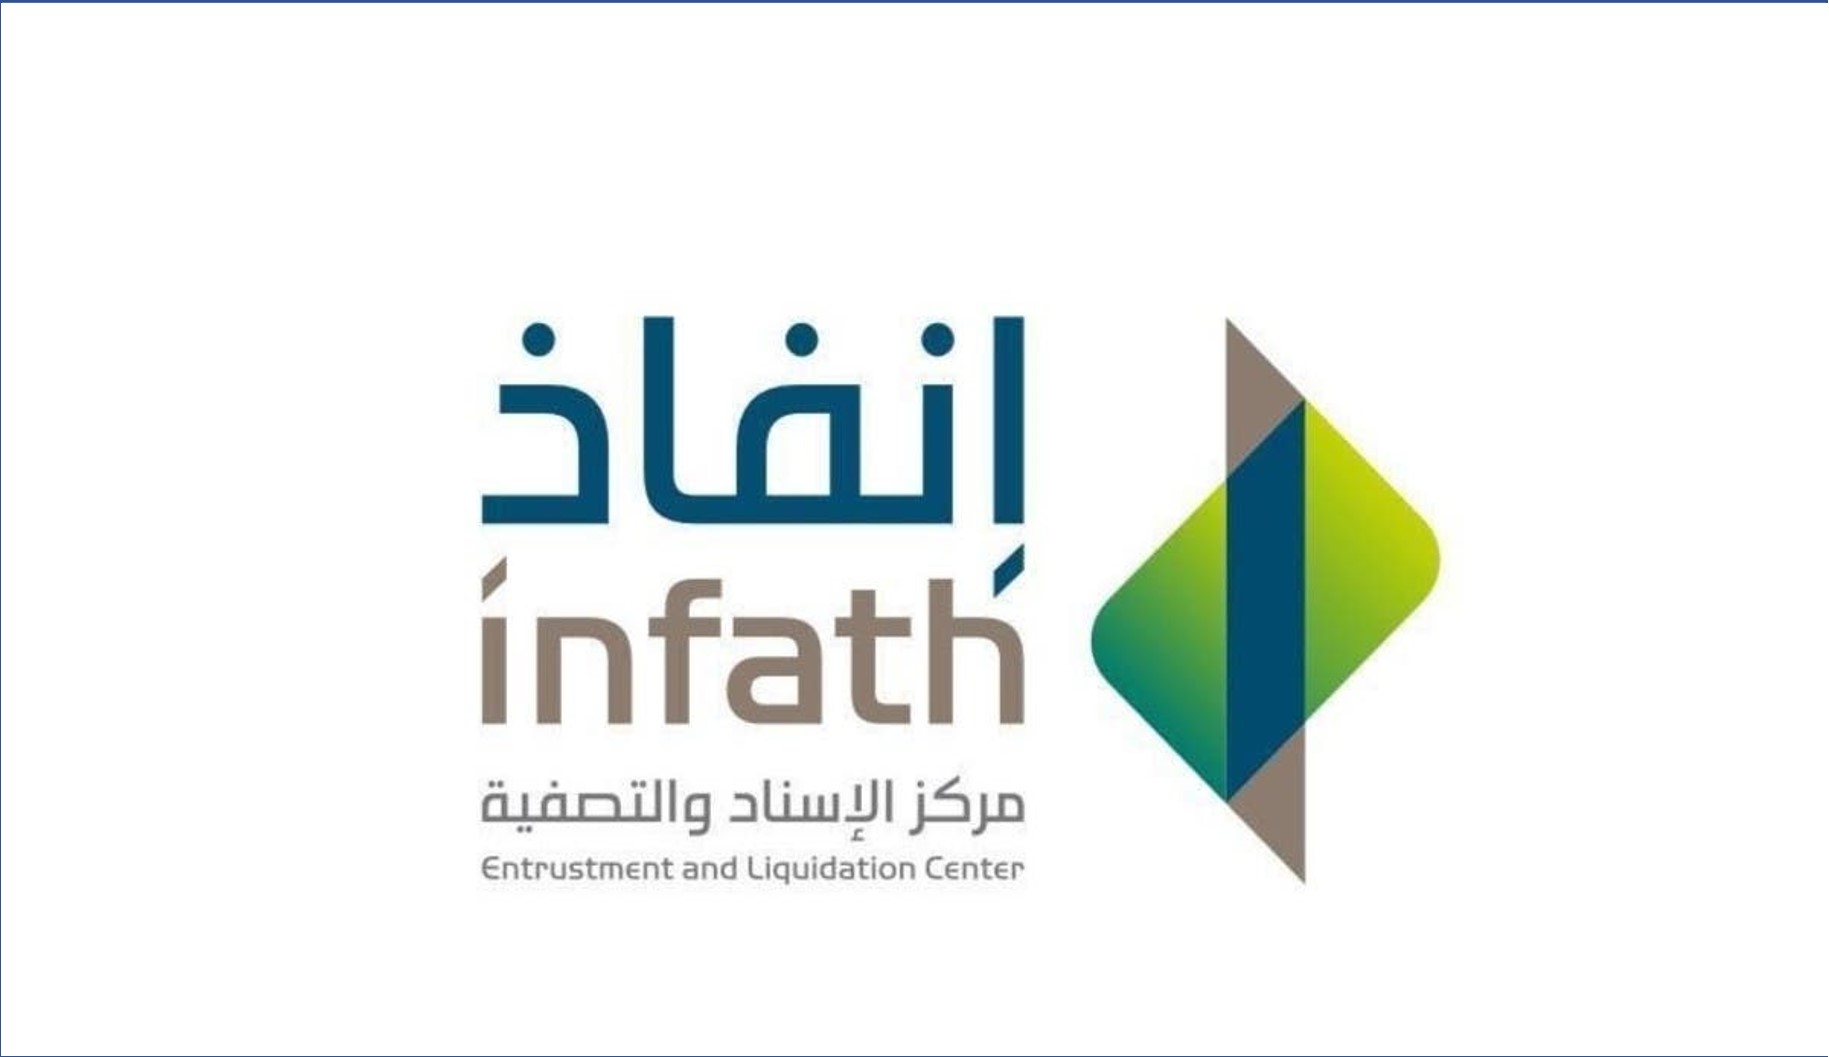 مركز الإسناد والتصفية إنفاذ يعلن عن توفير وظائف في الرياض